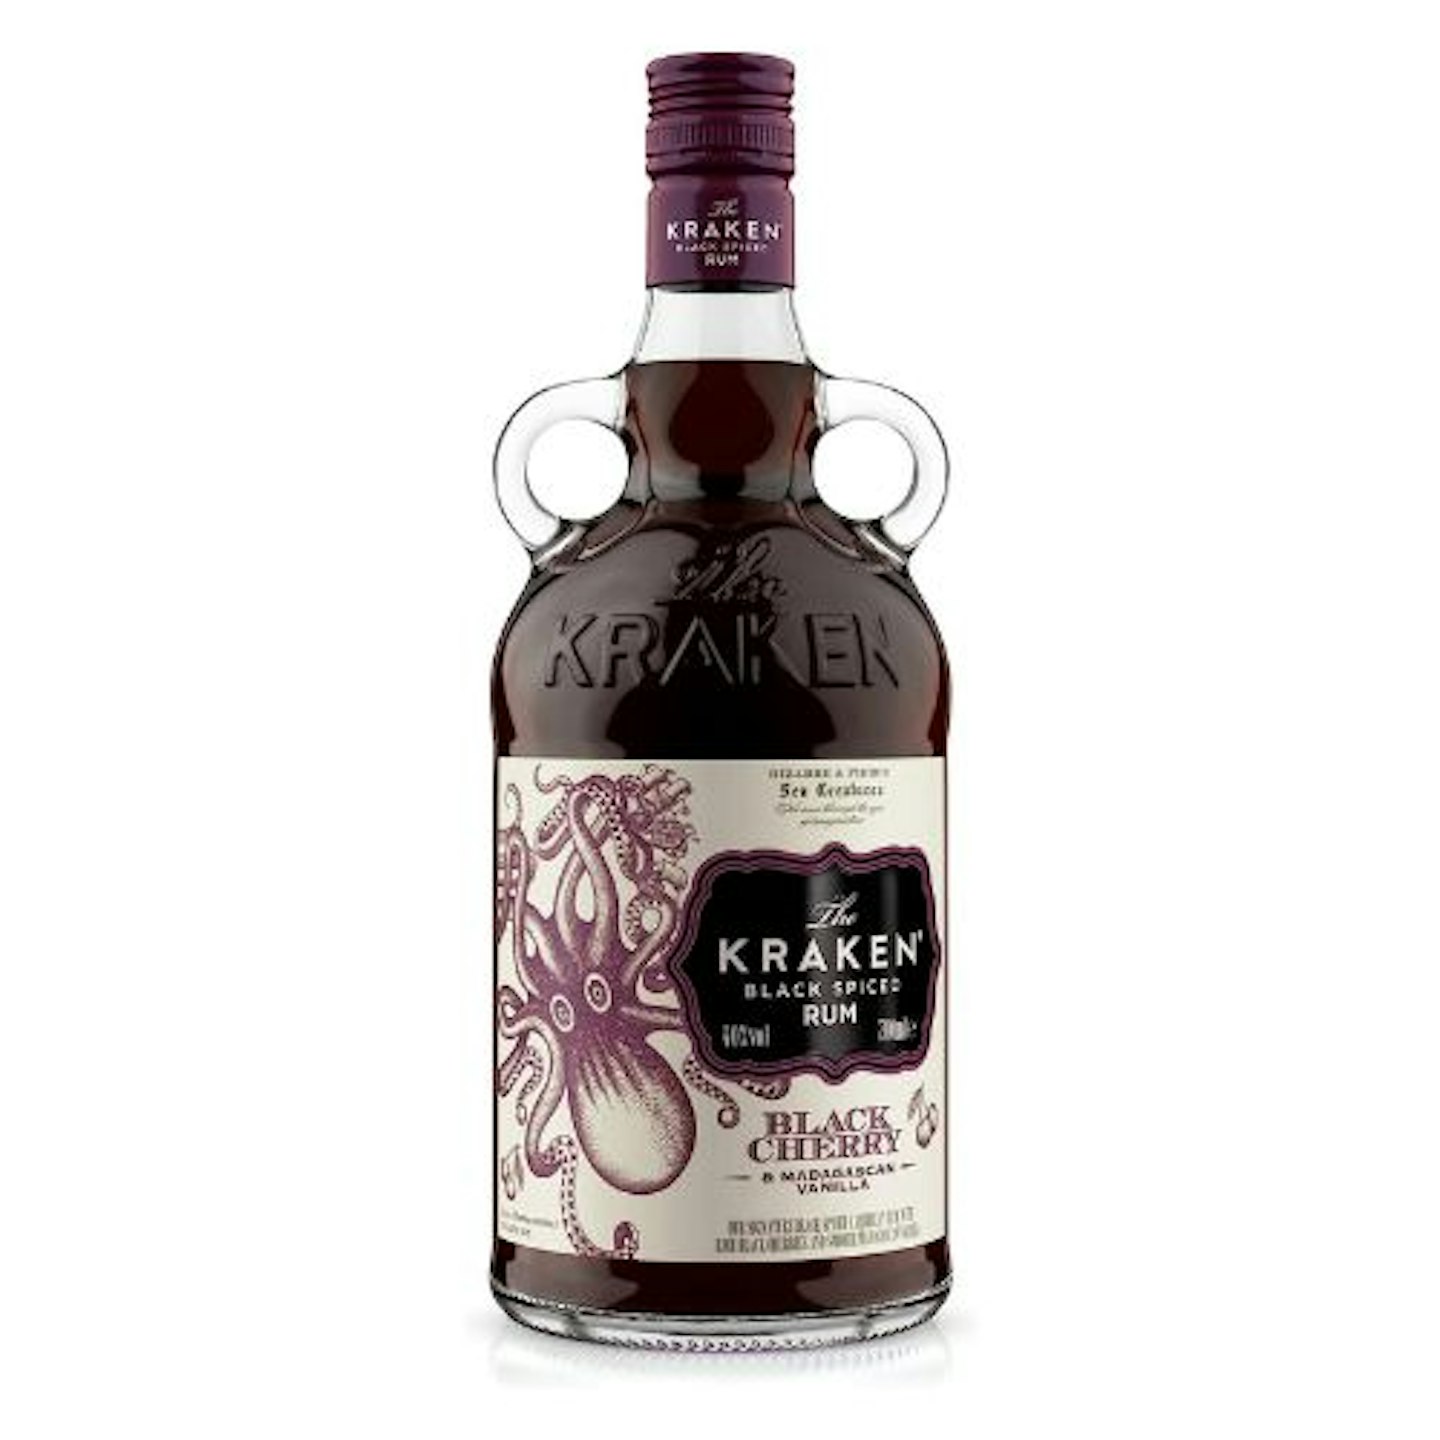 Kraken Black Cherry and Madagascan Vanilla Black Spiced Rum 70cl